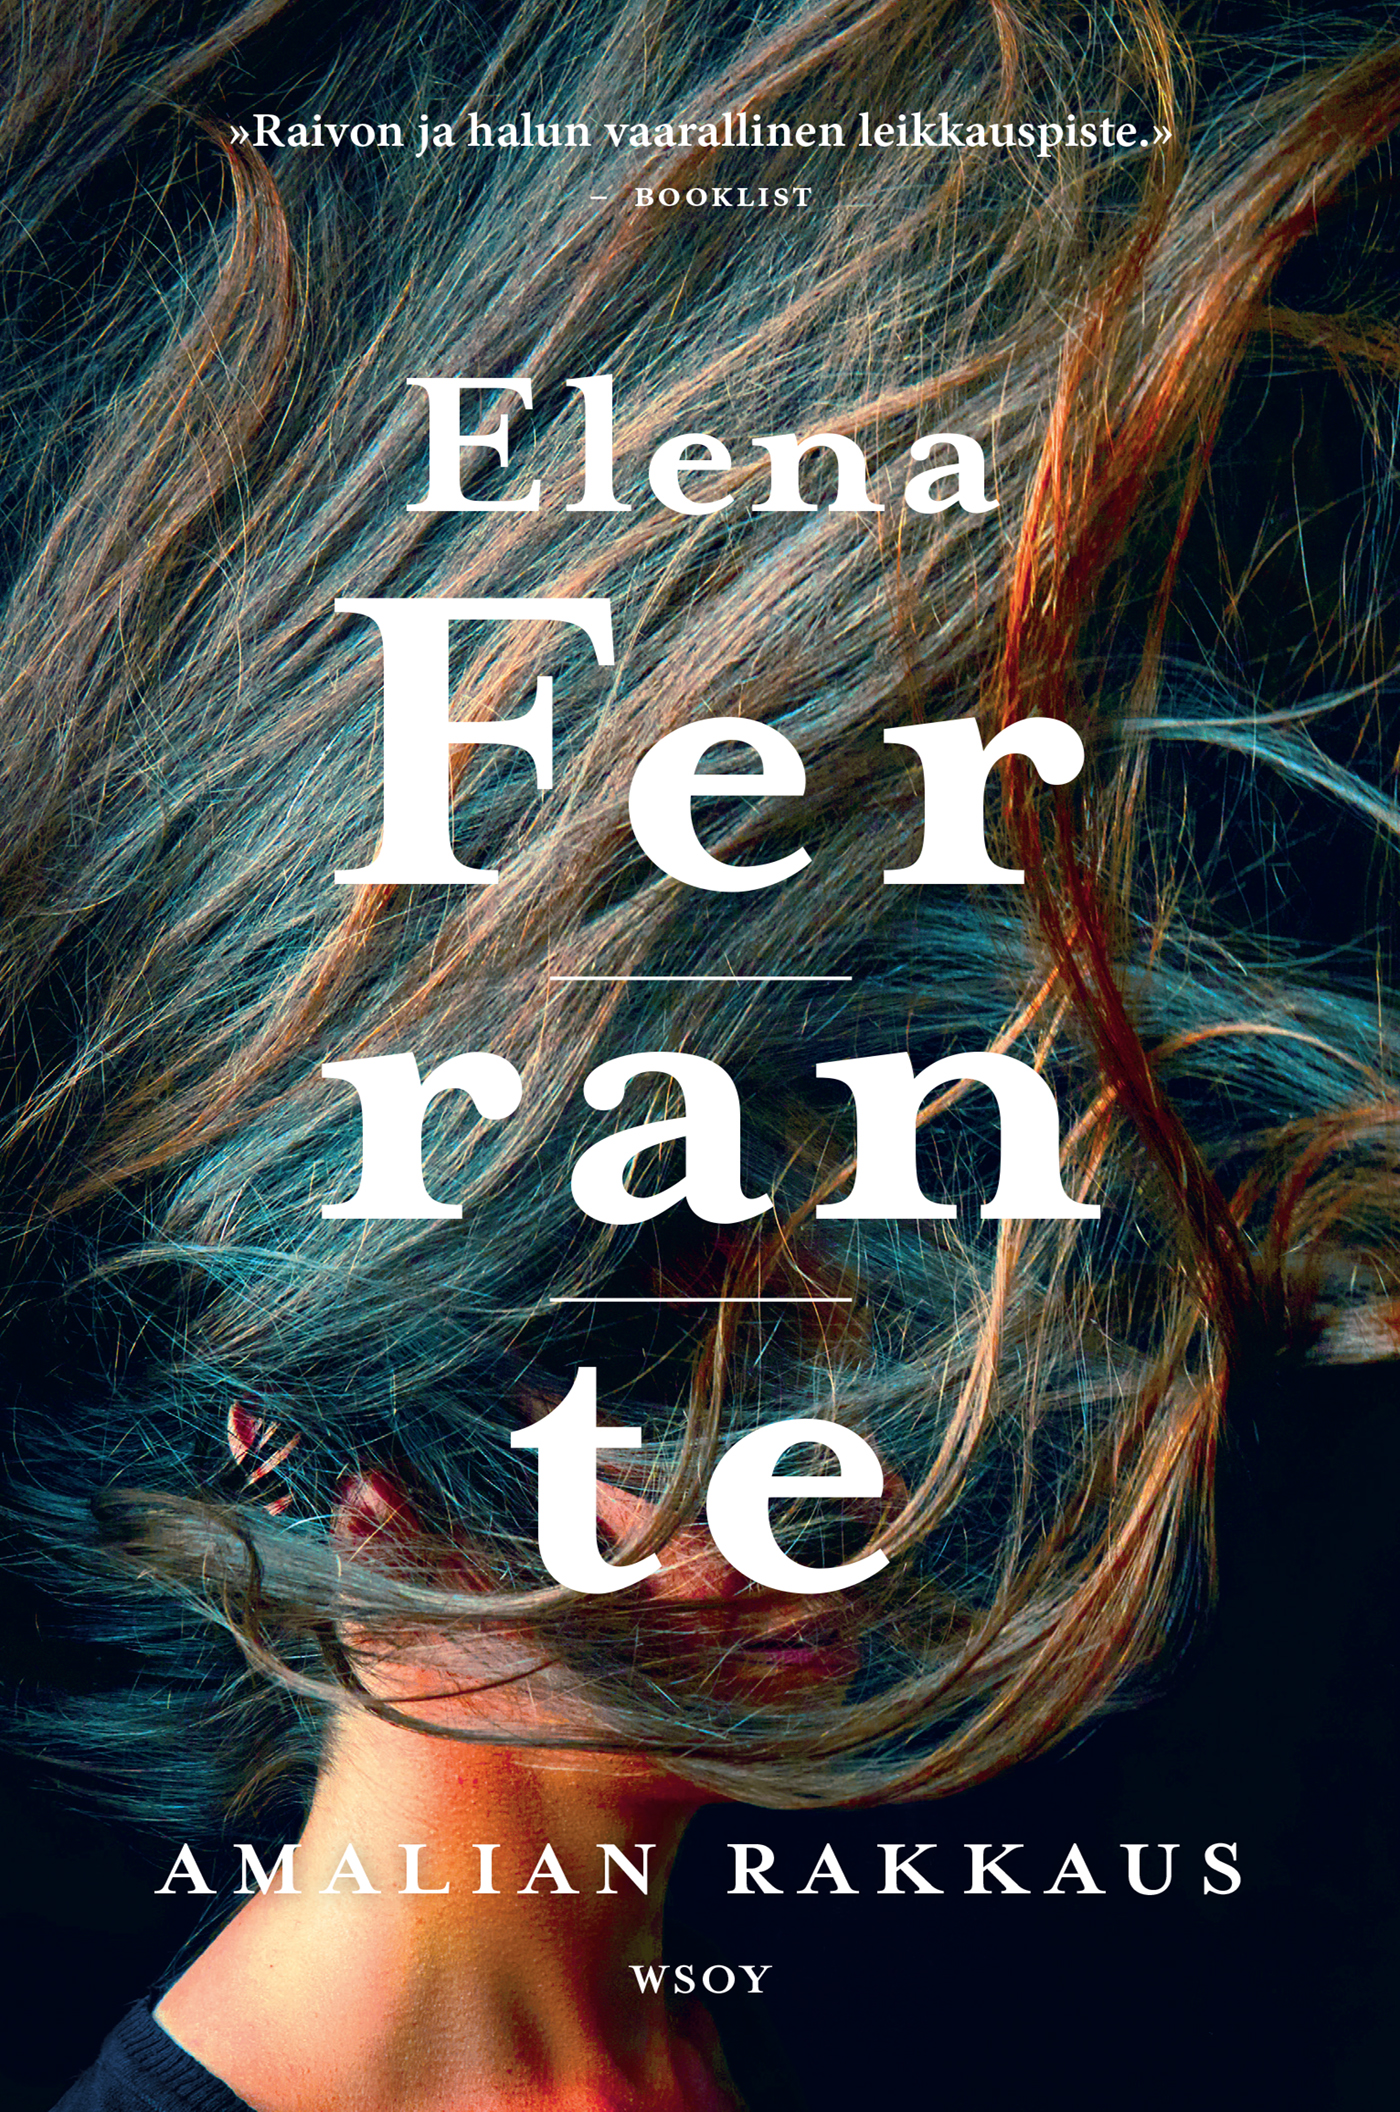 Ferrante, Elena - Amalian rakkaus, ebook